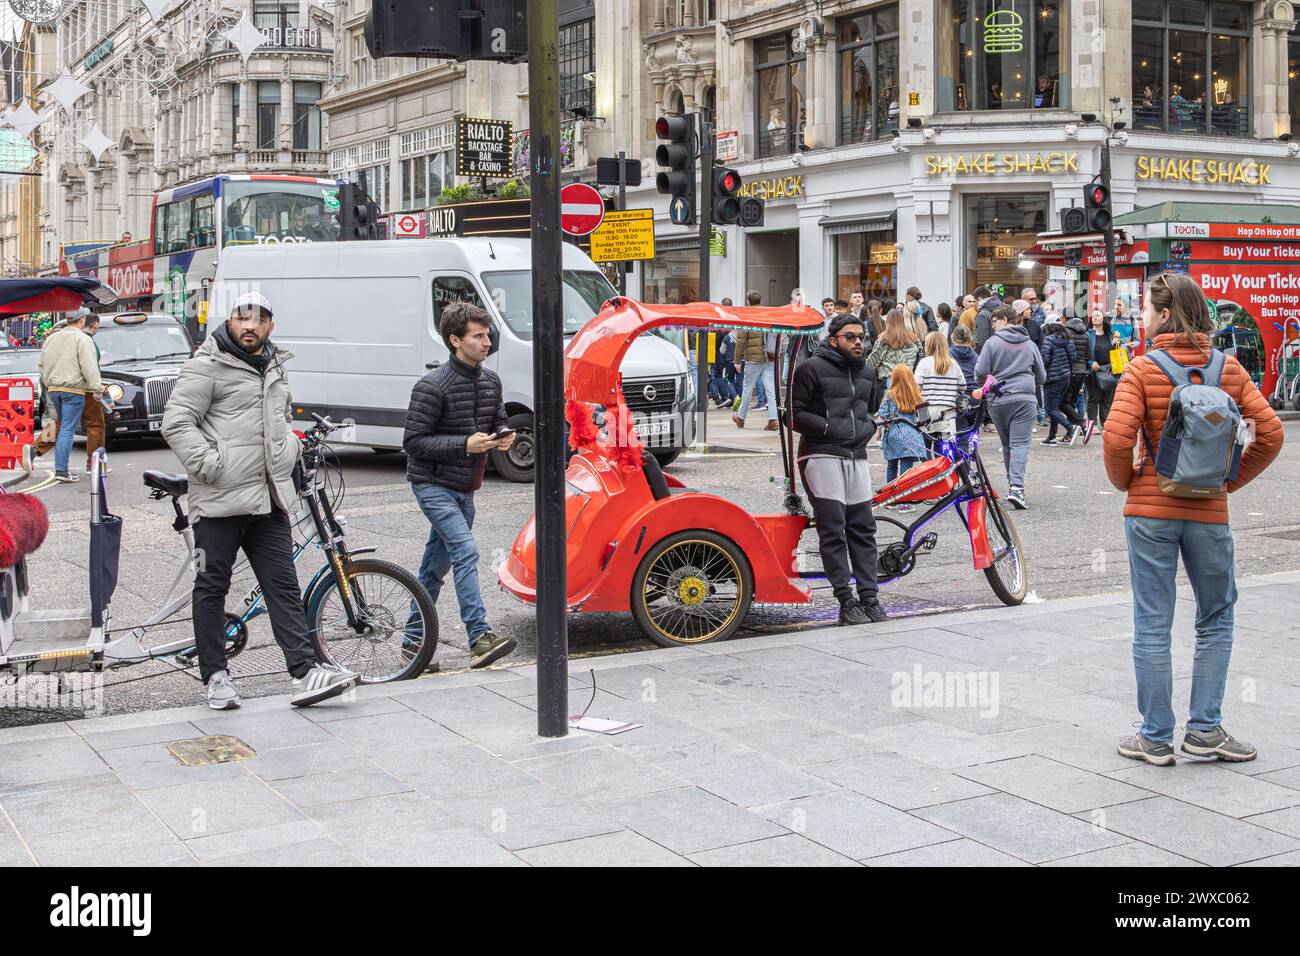 Pédicab ou pousse-pousse se stationne sur les lignes jaunes en attendant son prochain client. Le Pedicabs London Bill réglementera les tarifs et améliorera la sécurité. Banque D'Images